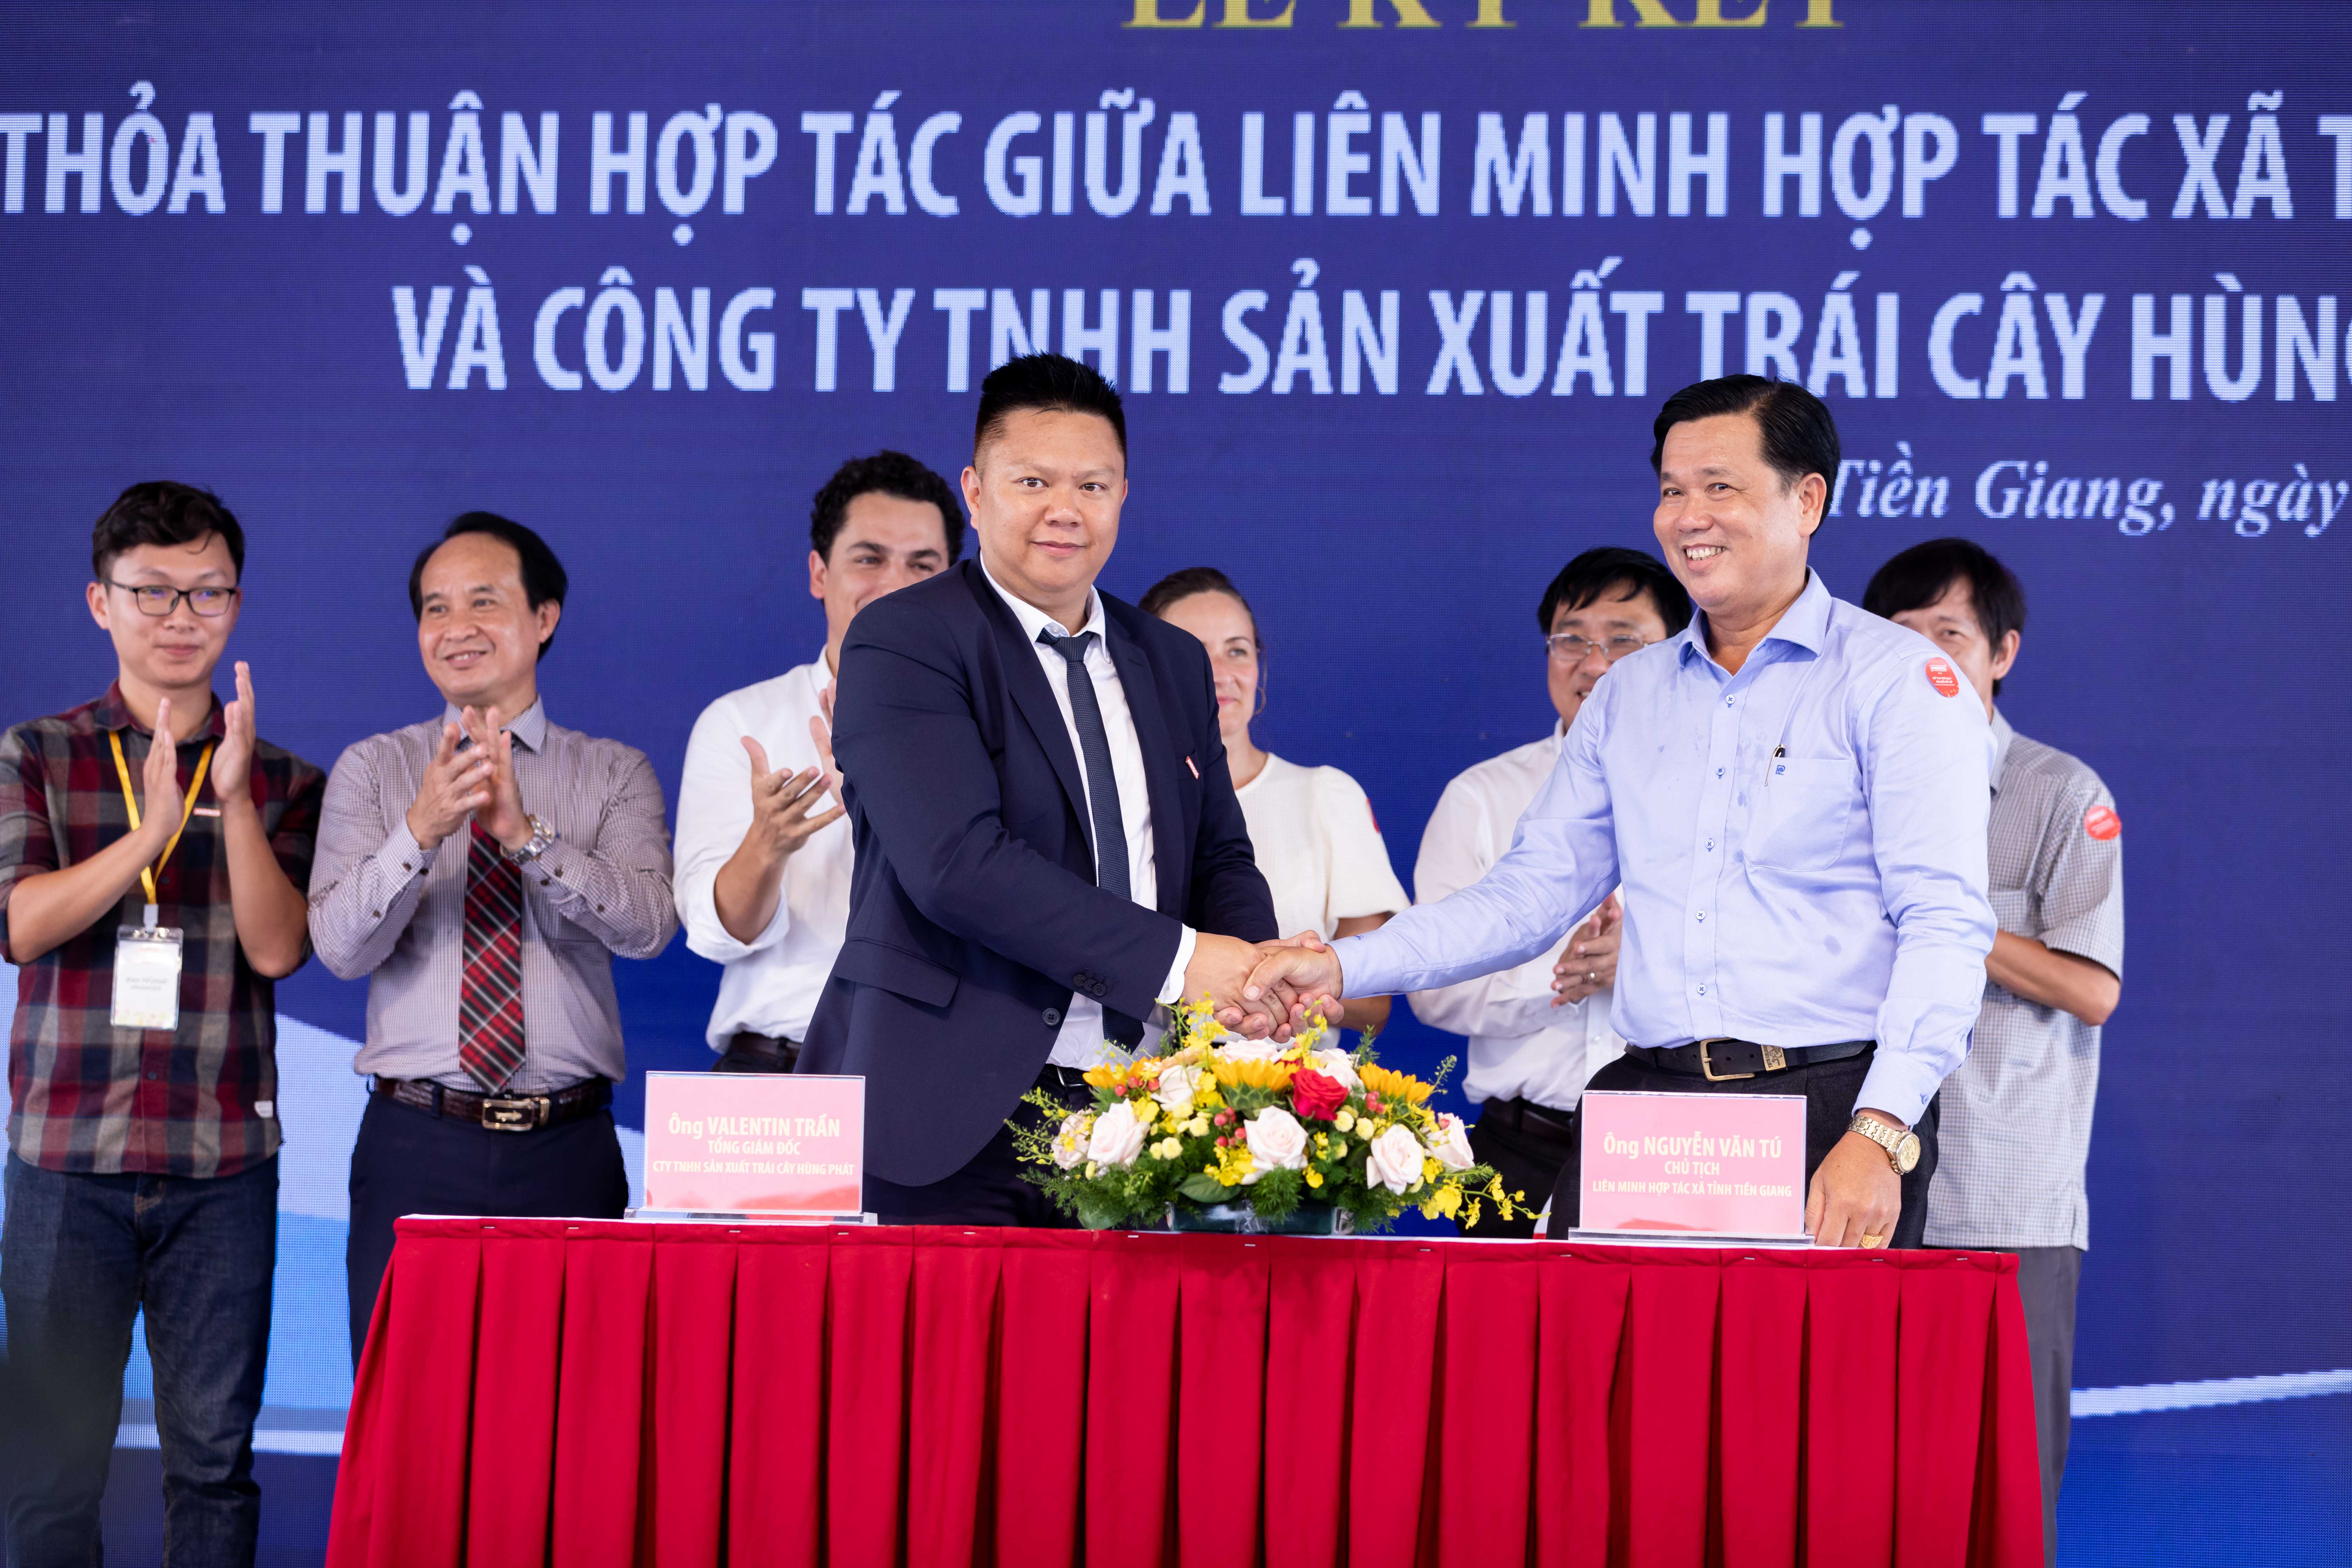 Lễ ký kết hợp tác giữa Liên minh Hợp tác xã tỉnh Tiền Giang và Công ty TNHH Sản xuất Trái cây Hùng Phát